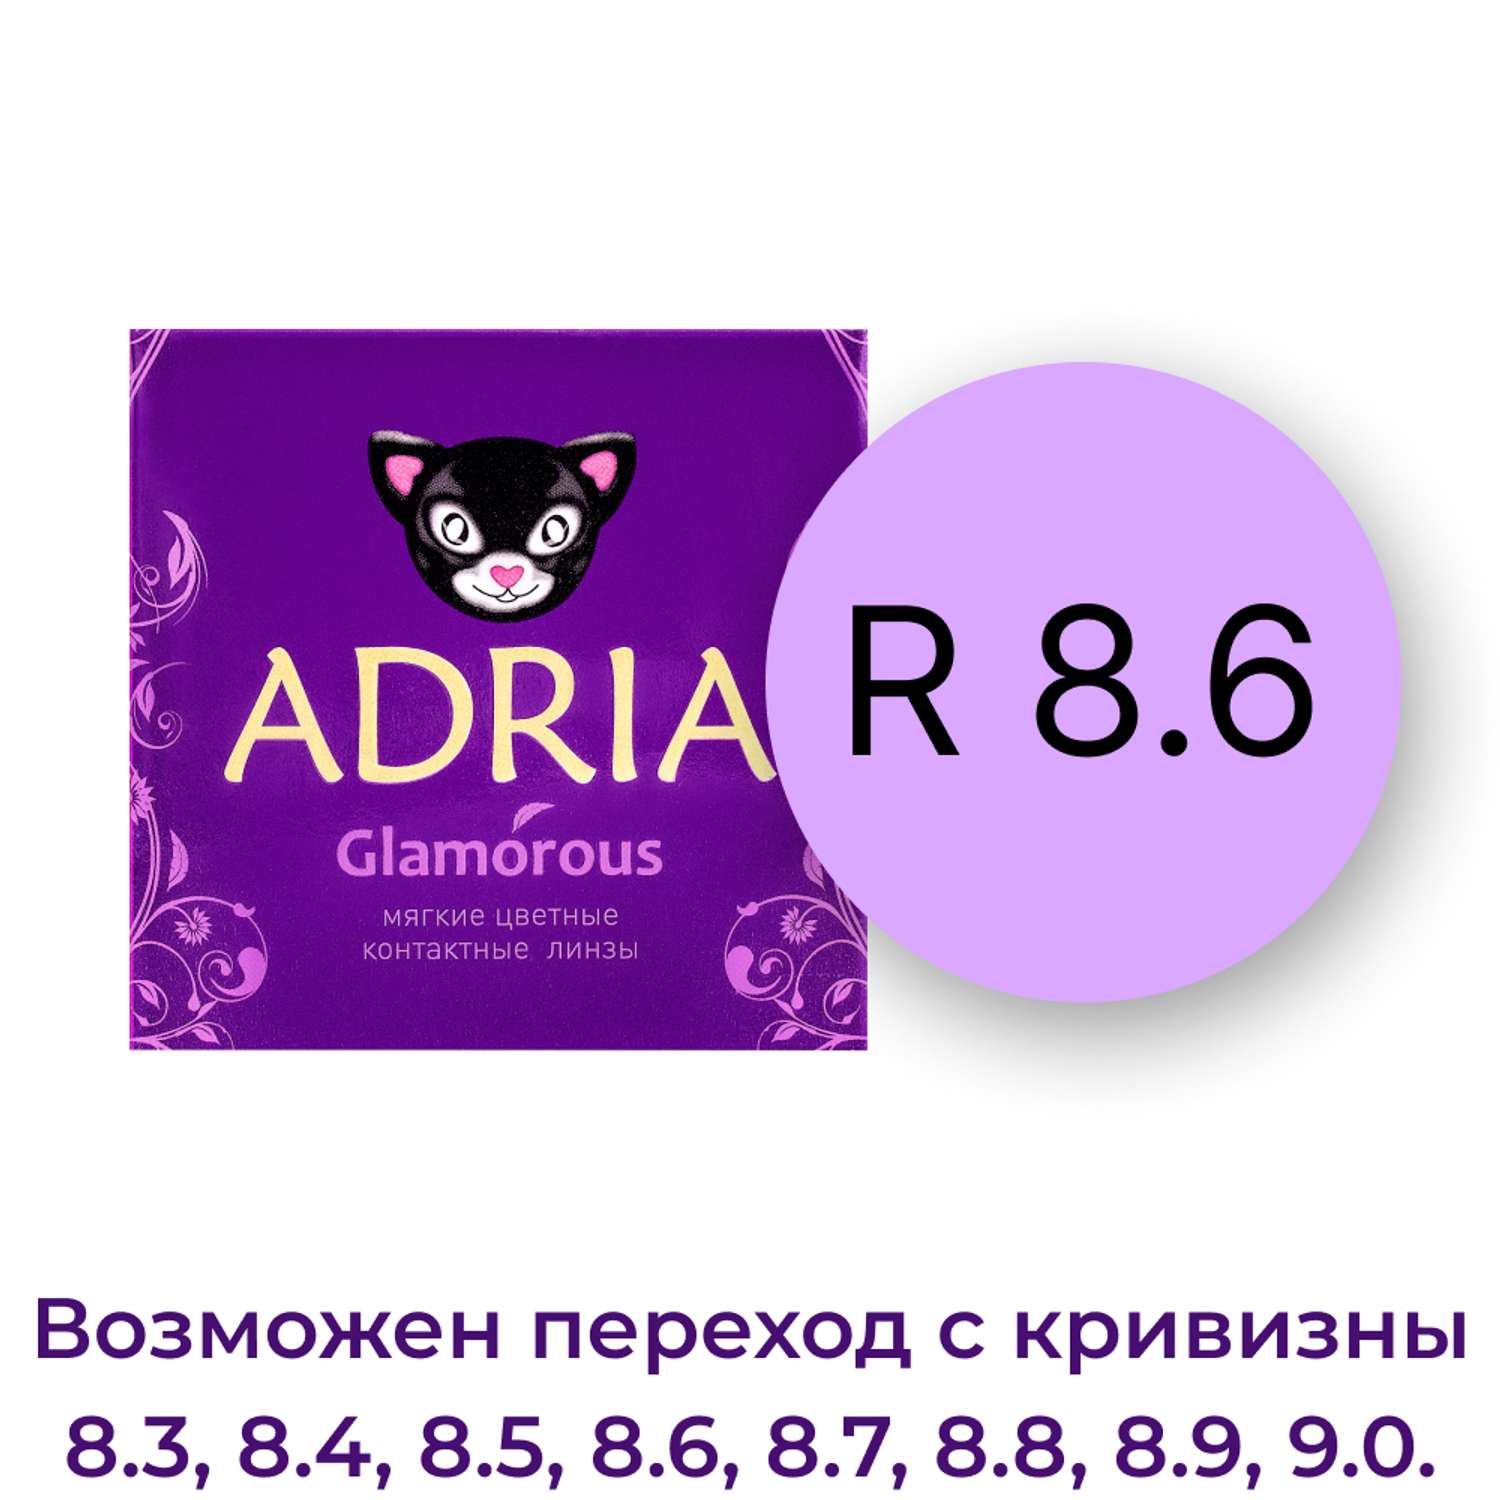 Цветные контактные линзы ADRIA Glamorous 2 линзы R 8.6 Violet -0.00 - фото 4